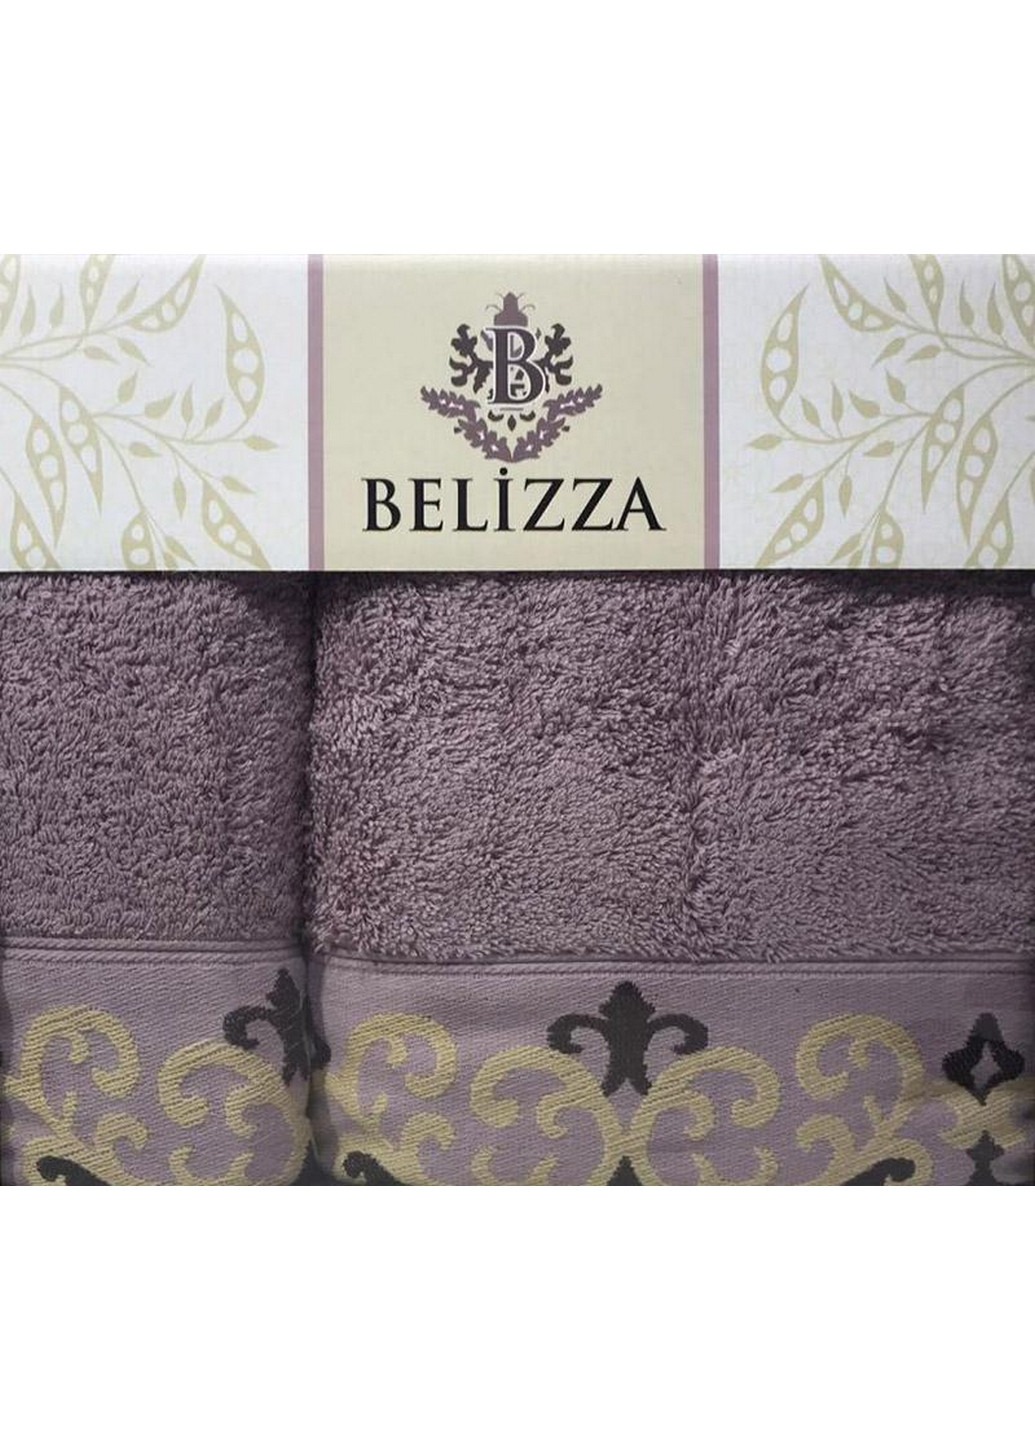 Belizza набір 2 рушники банне і лицьове, махра комбінований виробництво - Туреччина